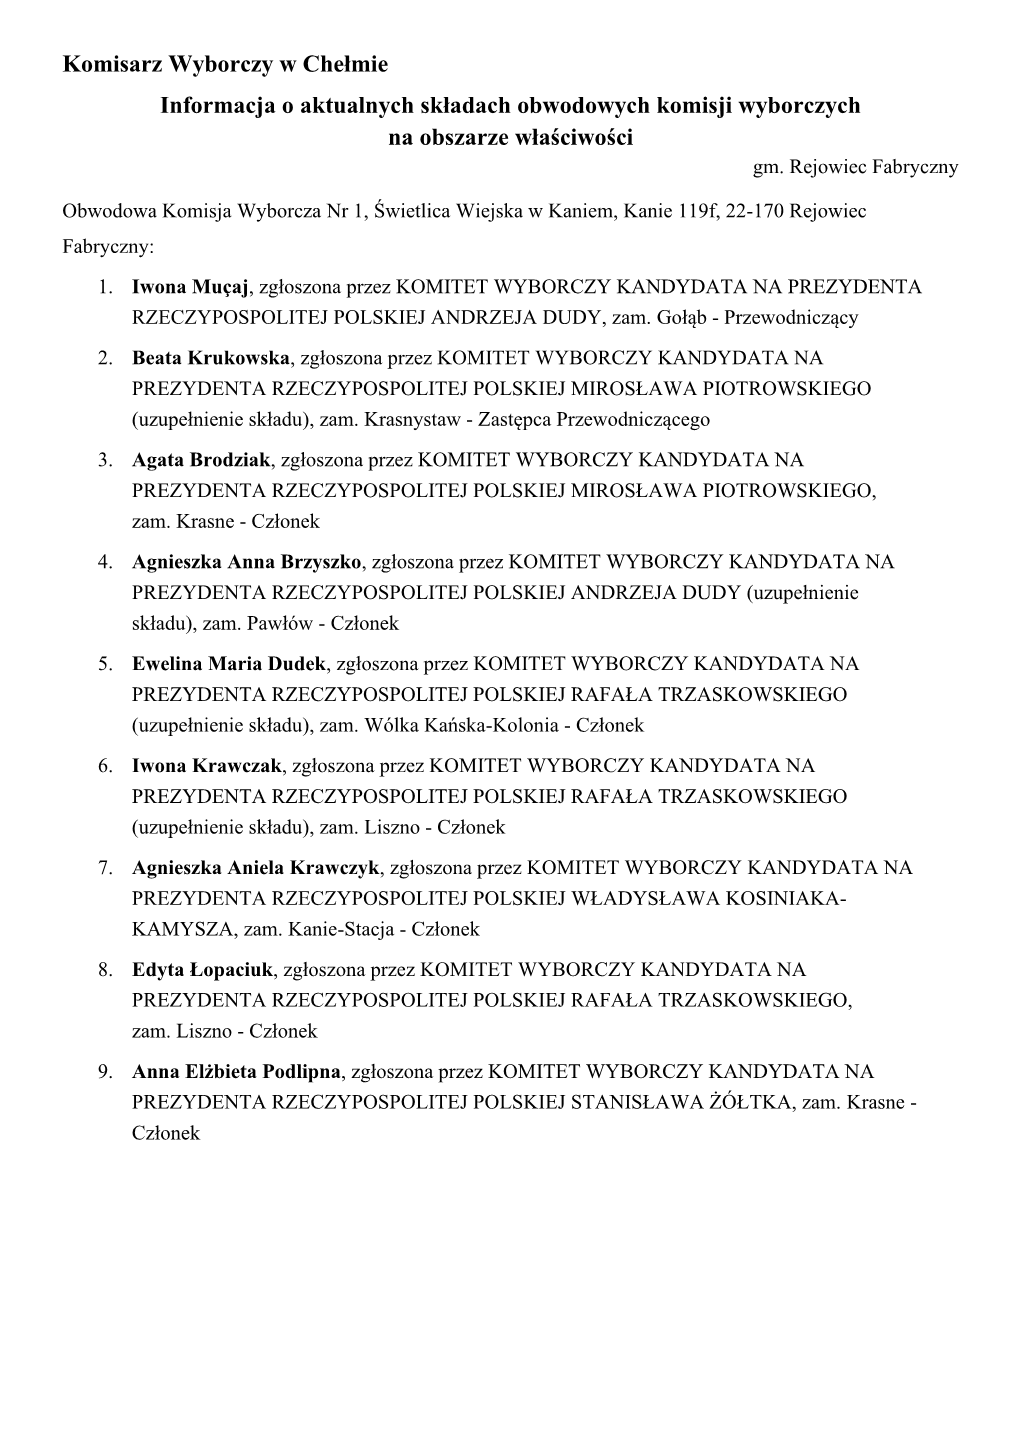 Komisarz Wyborczy W Chełmie Informacja O Aktualnych Składach Obwodowych Komisji Wyborczych Na Obszarze Właściwości Gm